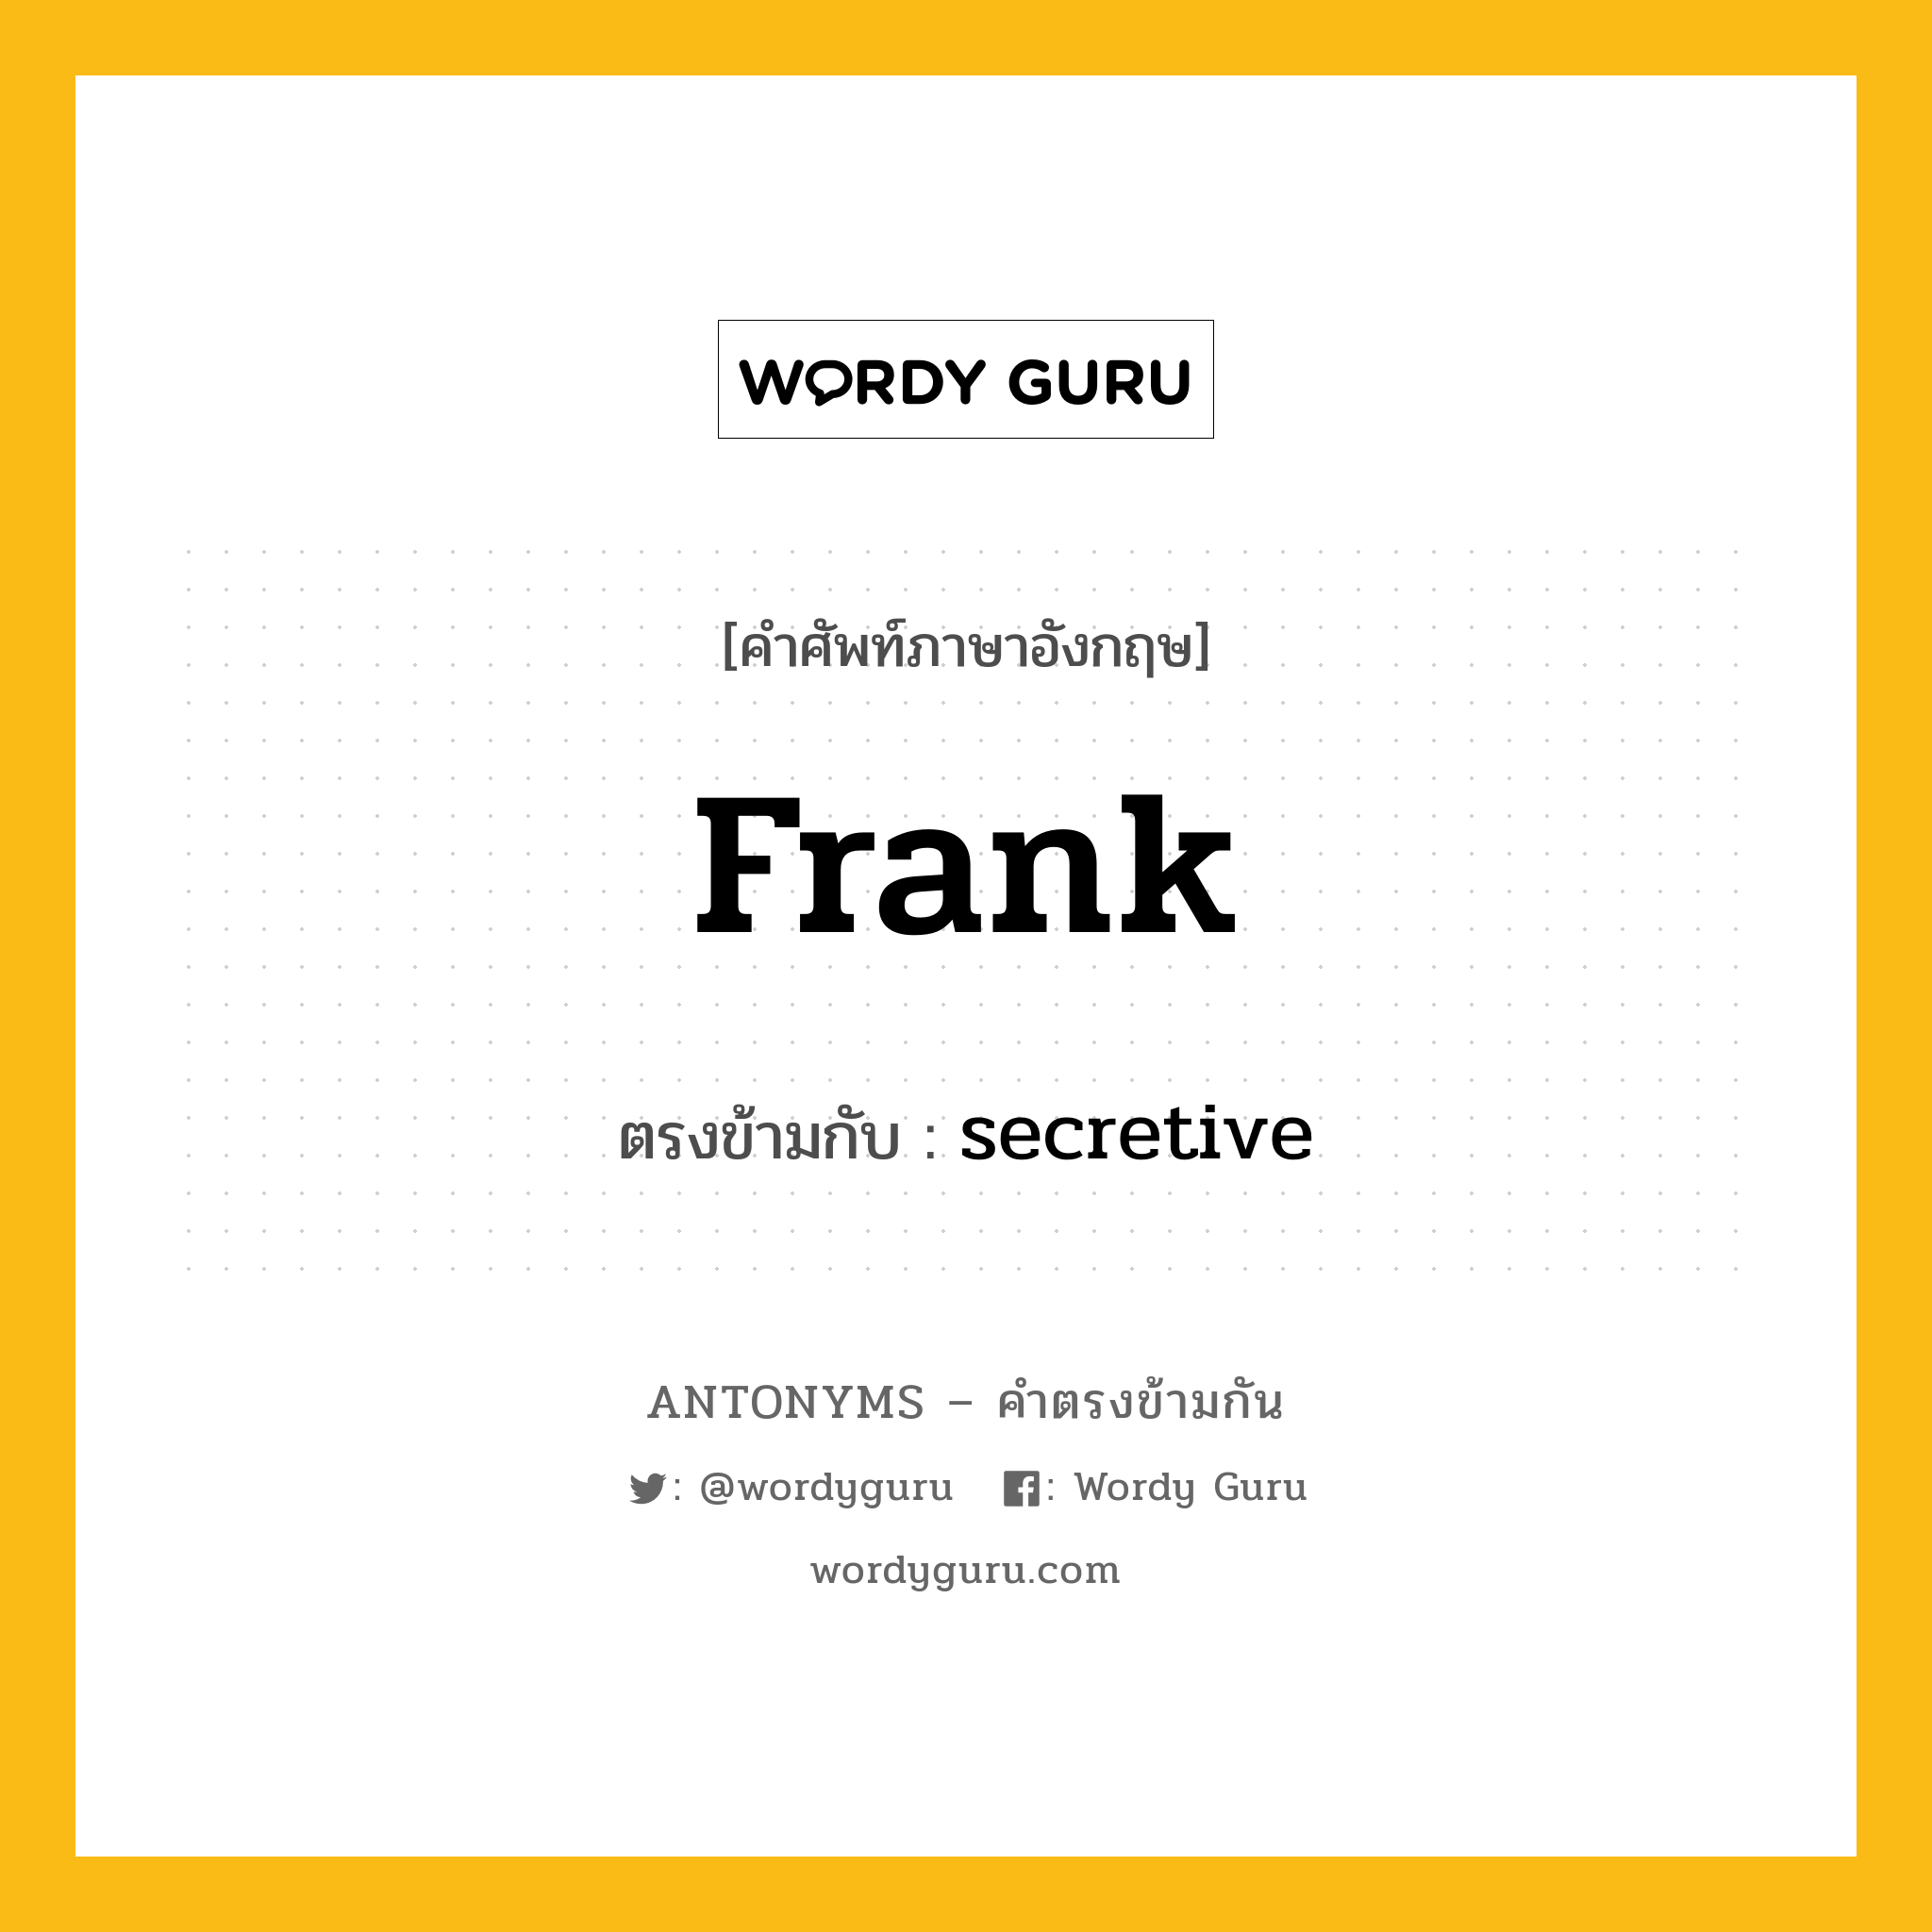 frank เป็นคำตรงข้ามกับคำไหนบ้าง?, คำศัพท์ภาษาอังกฤษ frank ตรงข้ามกับ secretive หมวด secretive